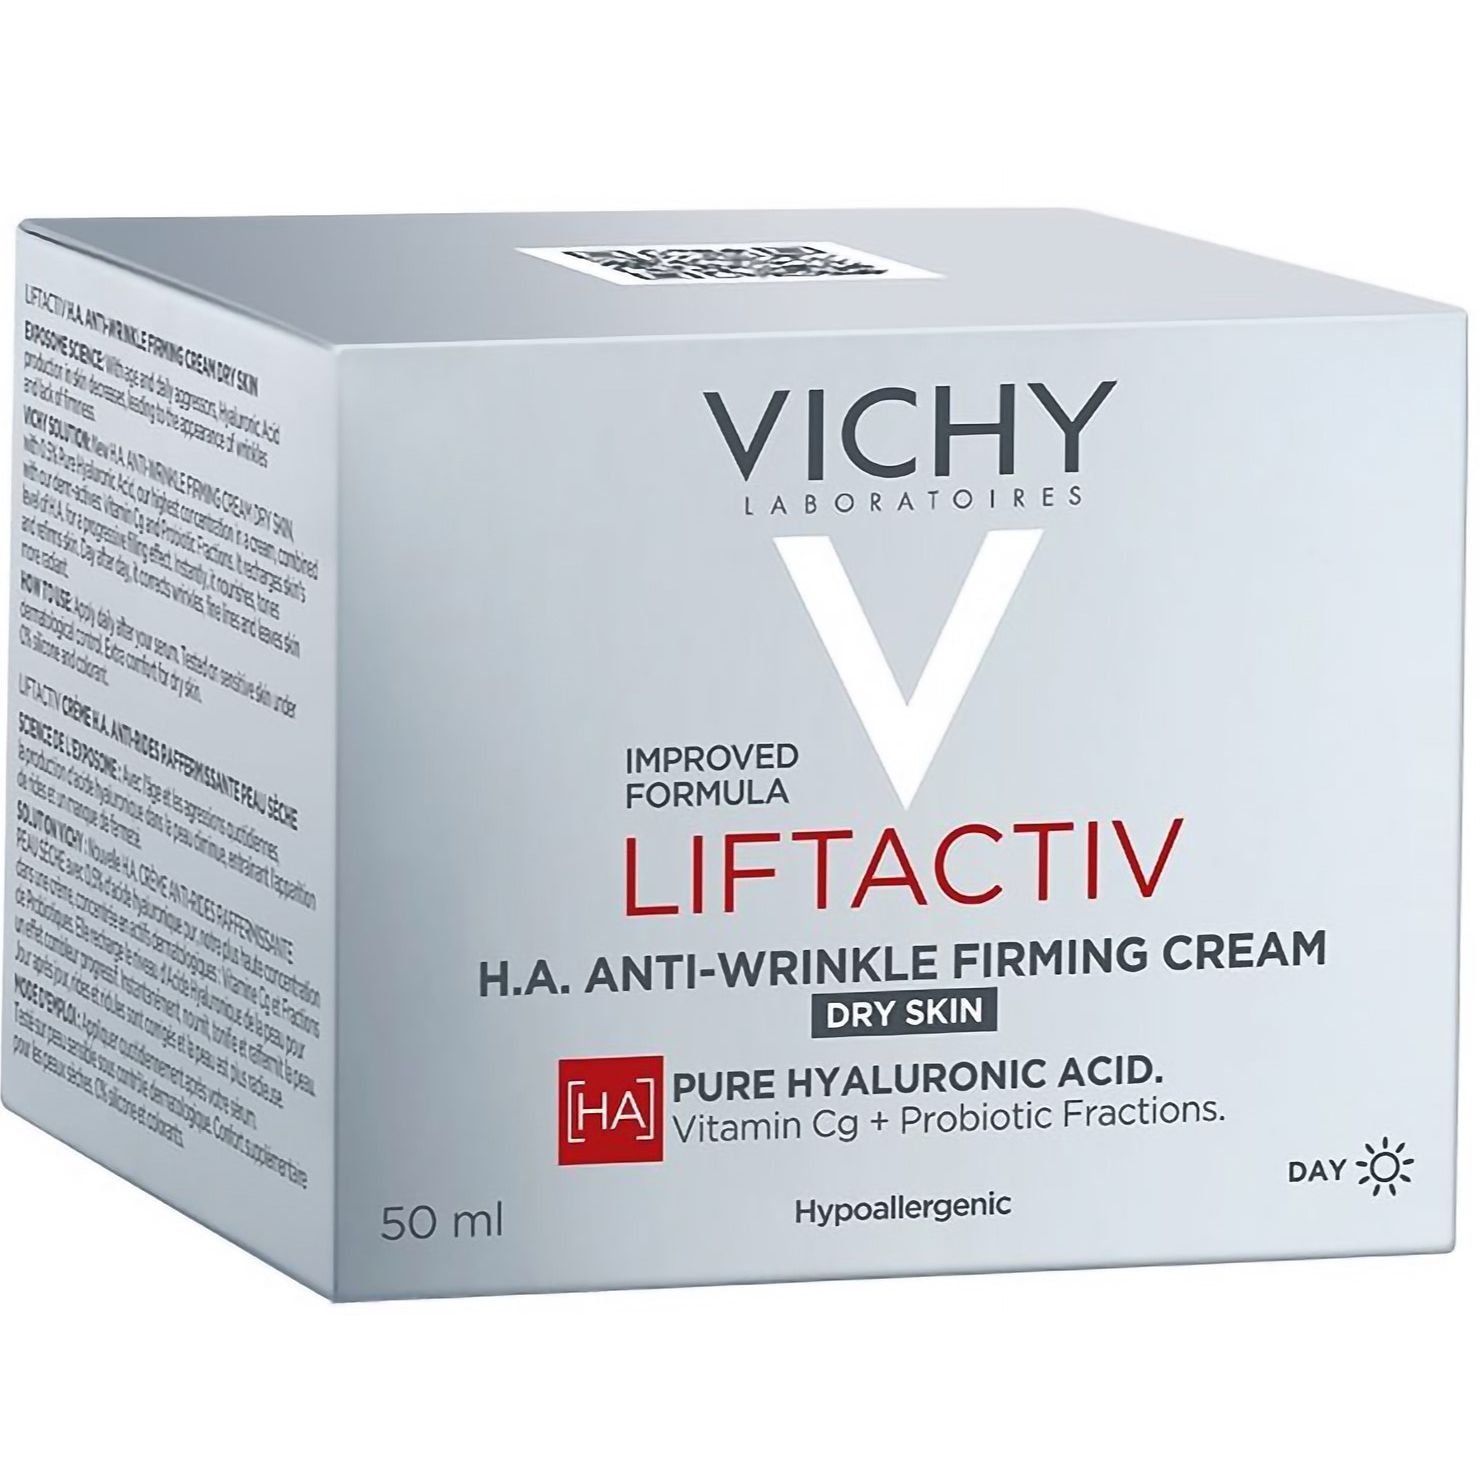 Розгладжувальний крем Vichy Liftactiv H. A. з гіалуроновою кислотою для корекції зморшок для сухої шкіри 50 мл - фото 3